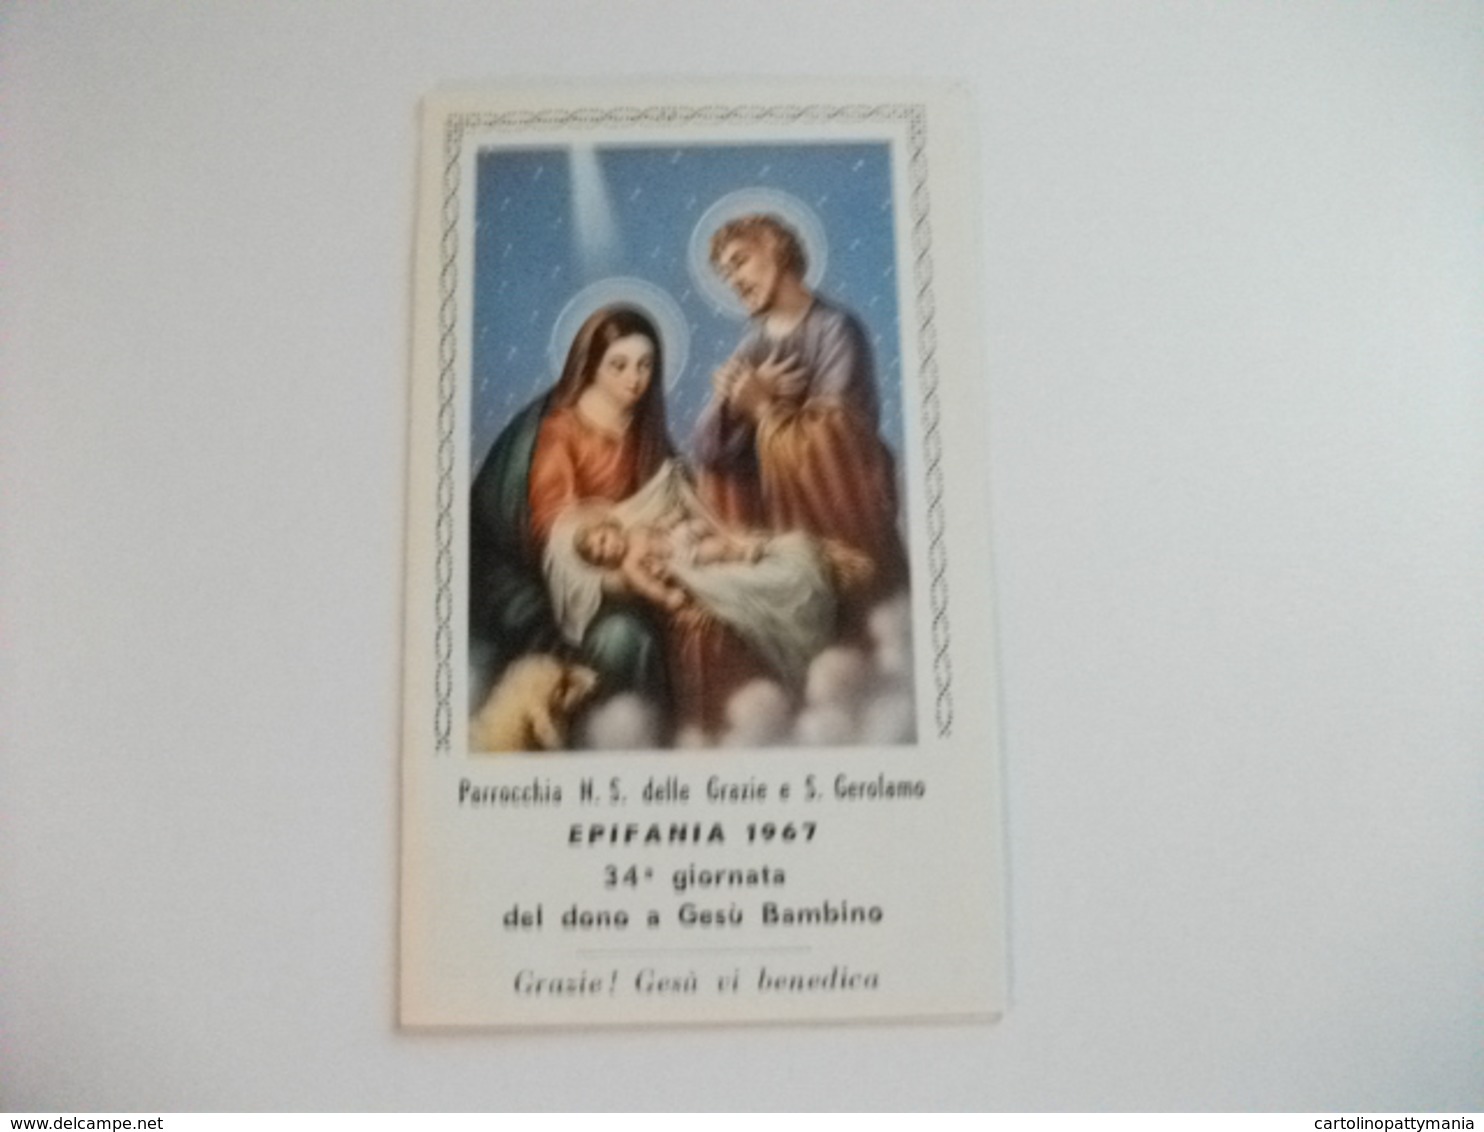 SANTINO HOLY PICTURE PARROCCHIA N.S. DELLE GRAZIE E SAN GEROLAMO EPIFANIA 1967 CON CALENDARIO - Religione & Esoterismo